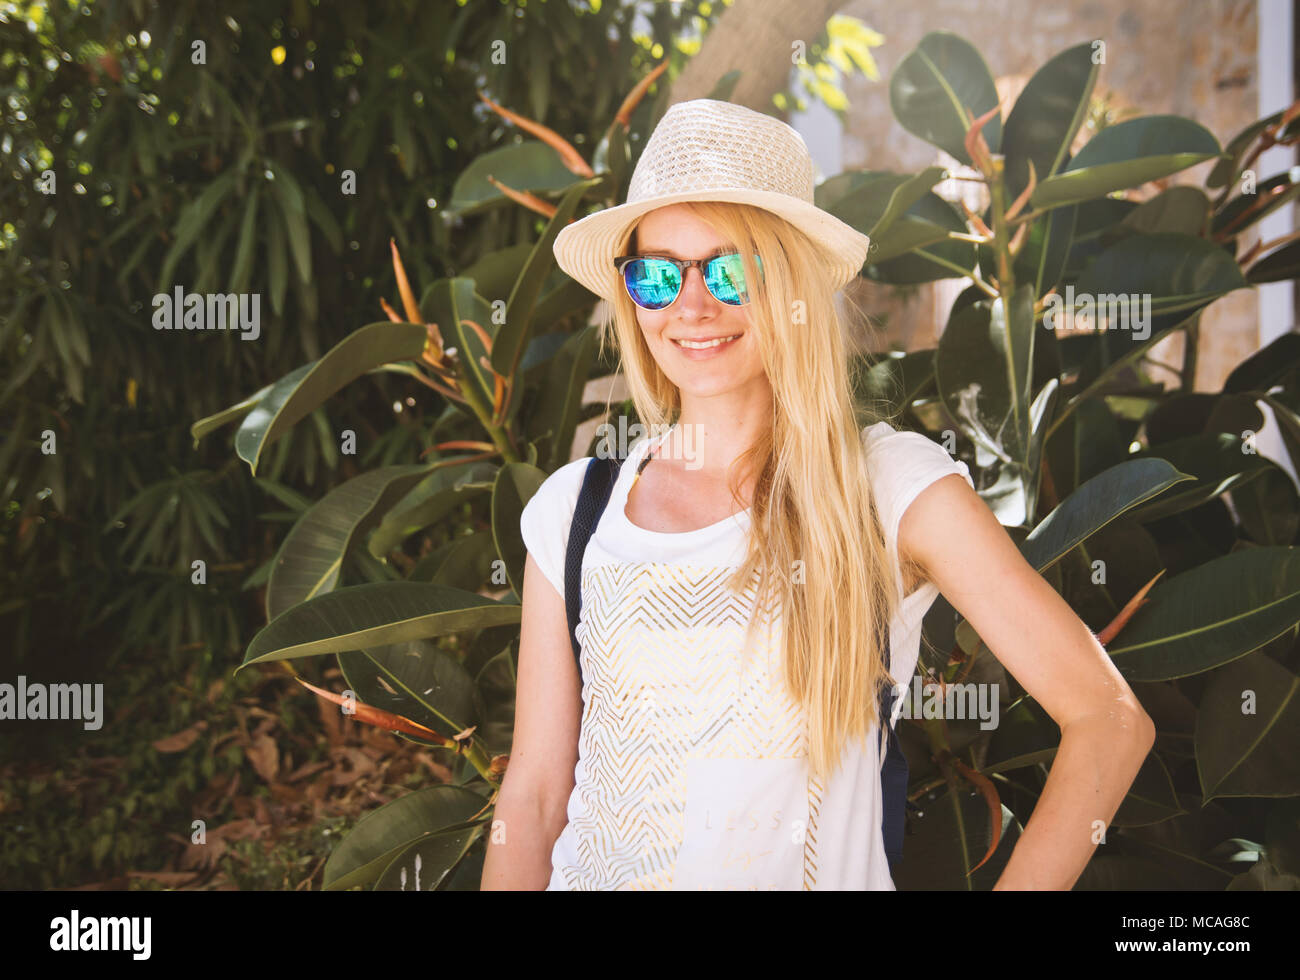 Sommer closeup Porträt der jungen Frau mit Sonnenbrille und Sommer Hut mit Laub Hintergrund Stockfoto